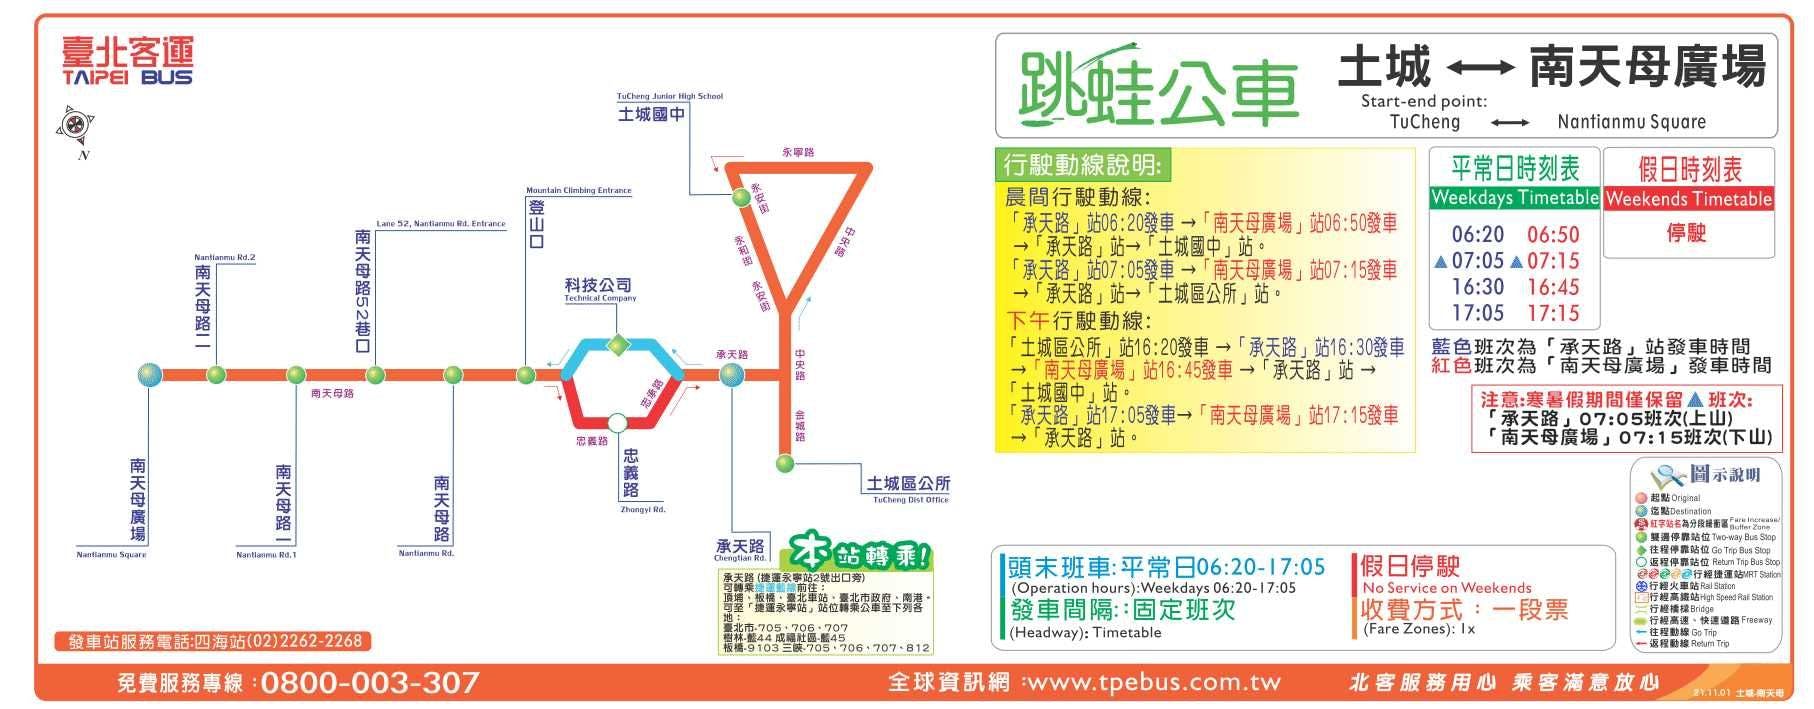 Tucheng-Nantianmu SquareRoute Map-新北市 Bus